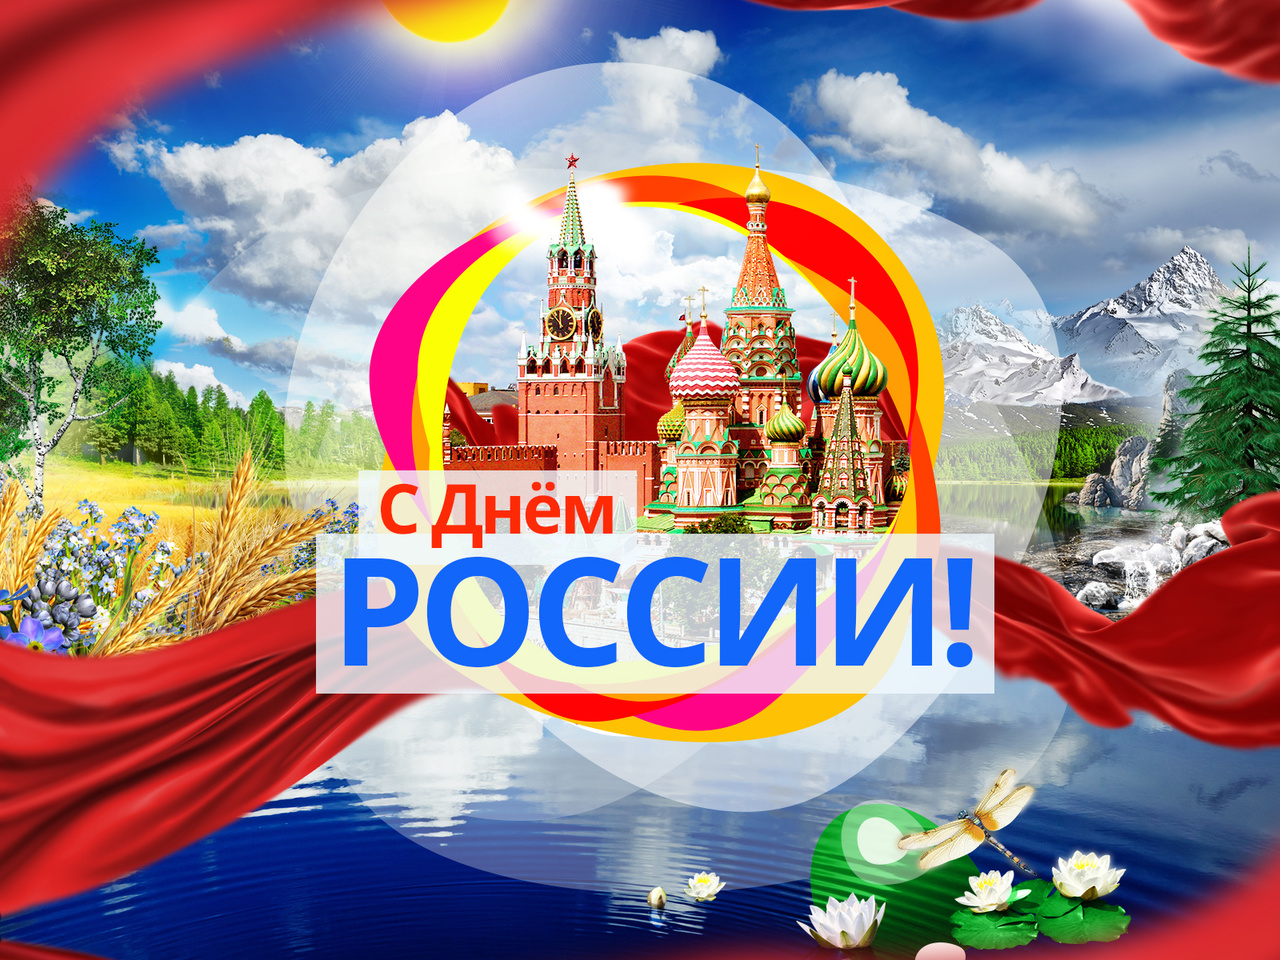 Поздравляем Вас с праздником, важным для каждого жителя нашей страны – с Днем России!